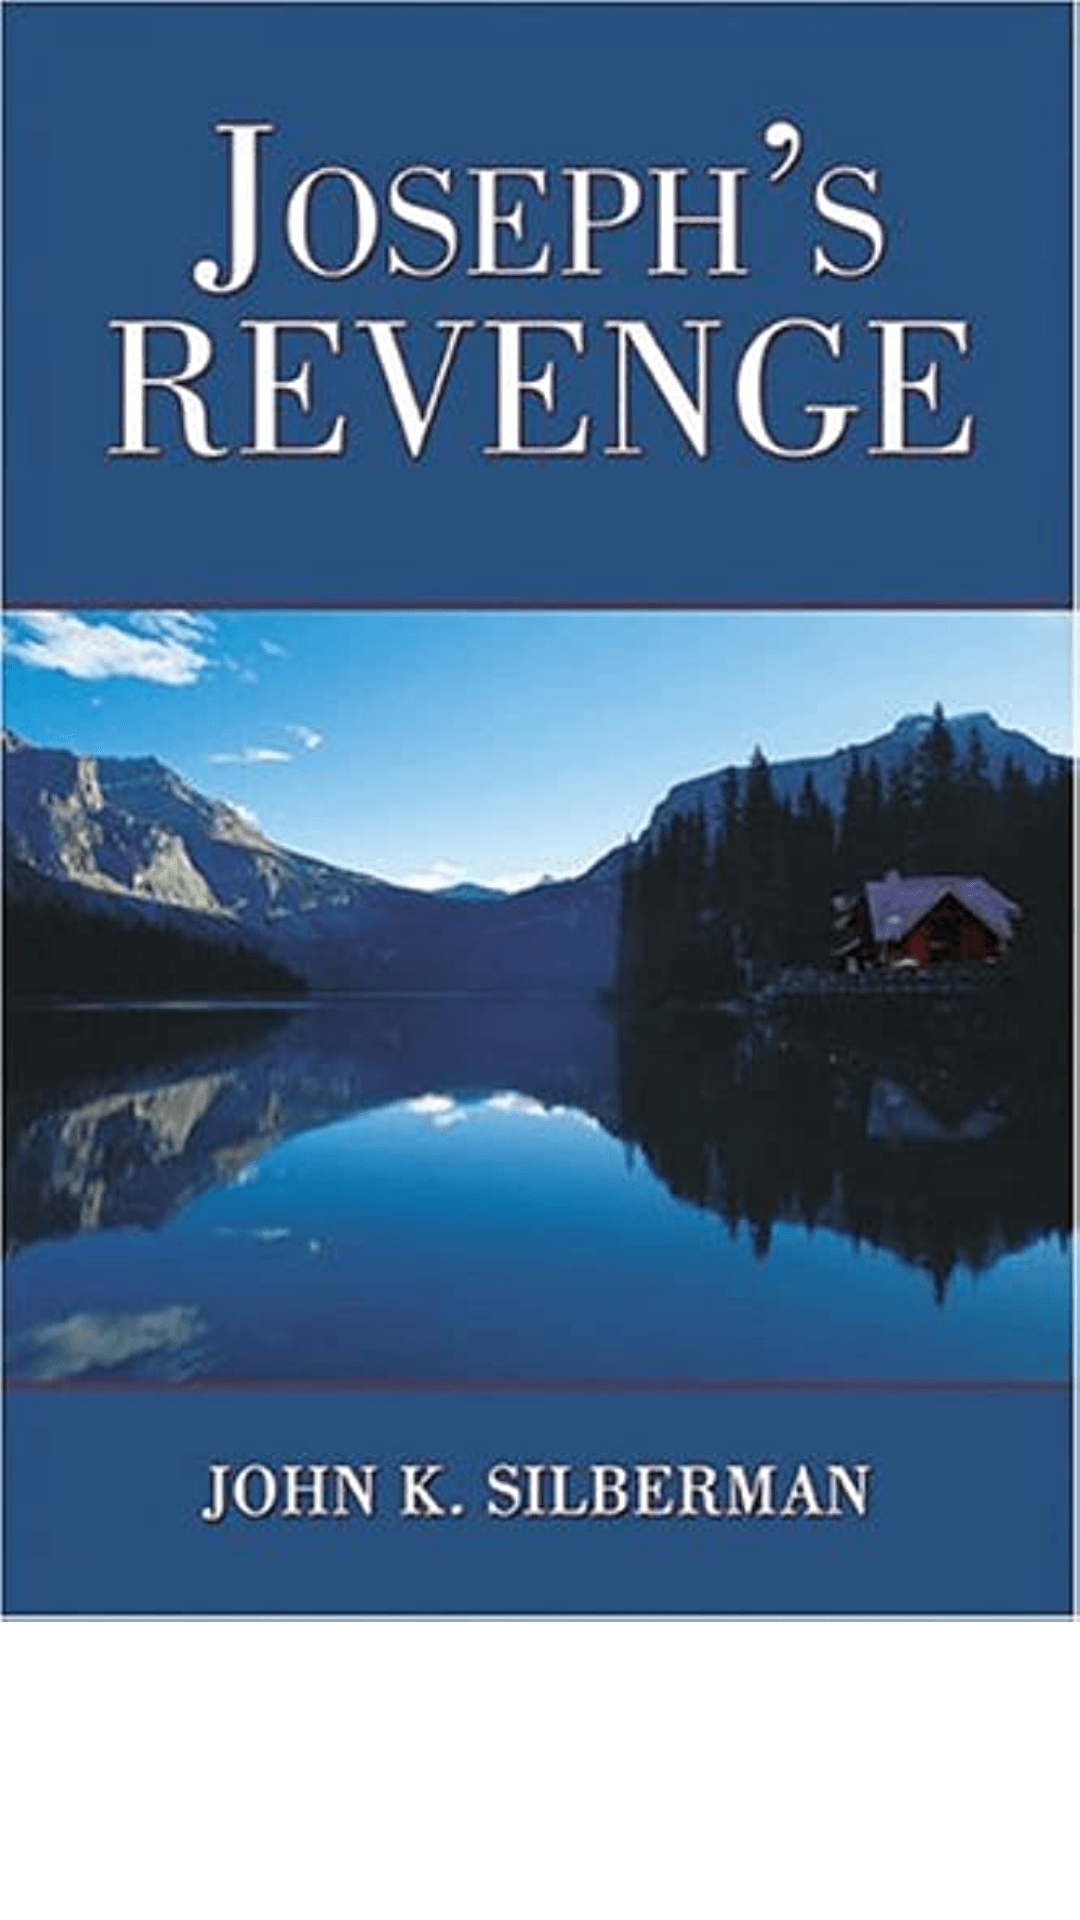 Joseph's Revenge by John K. Silberman